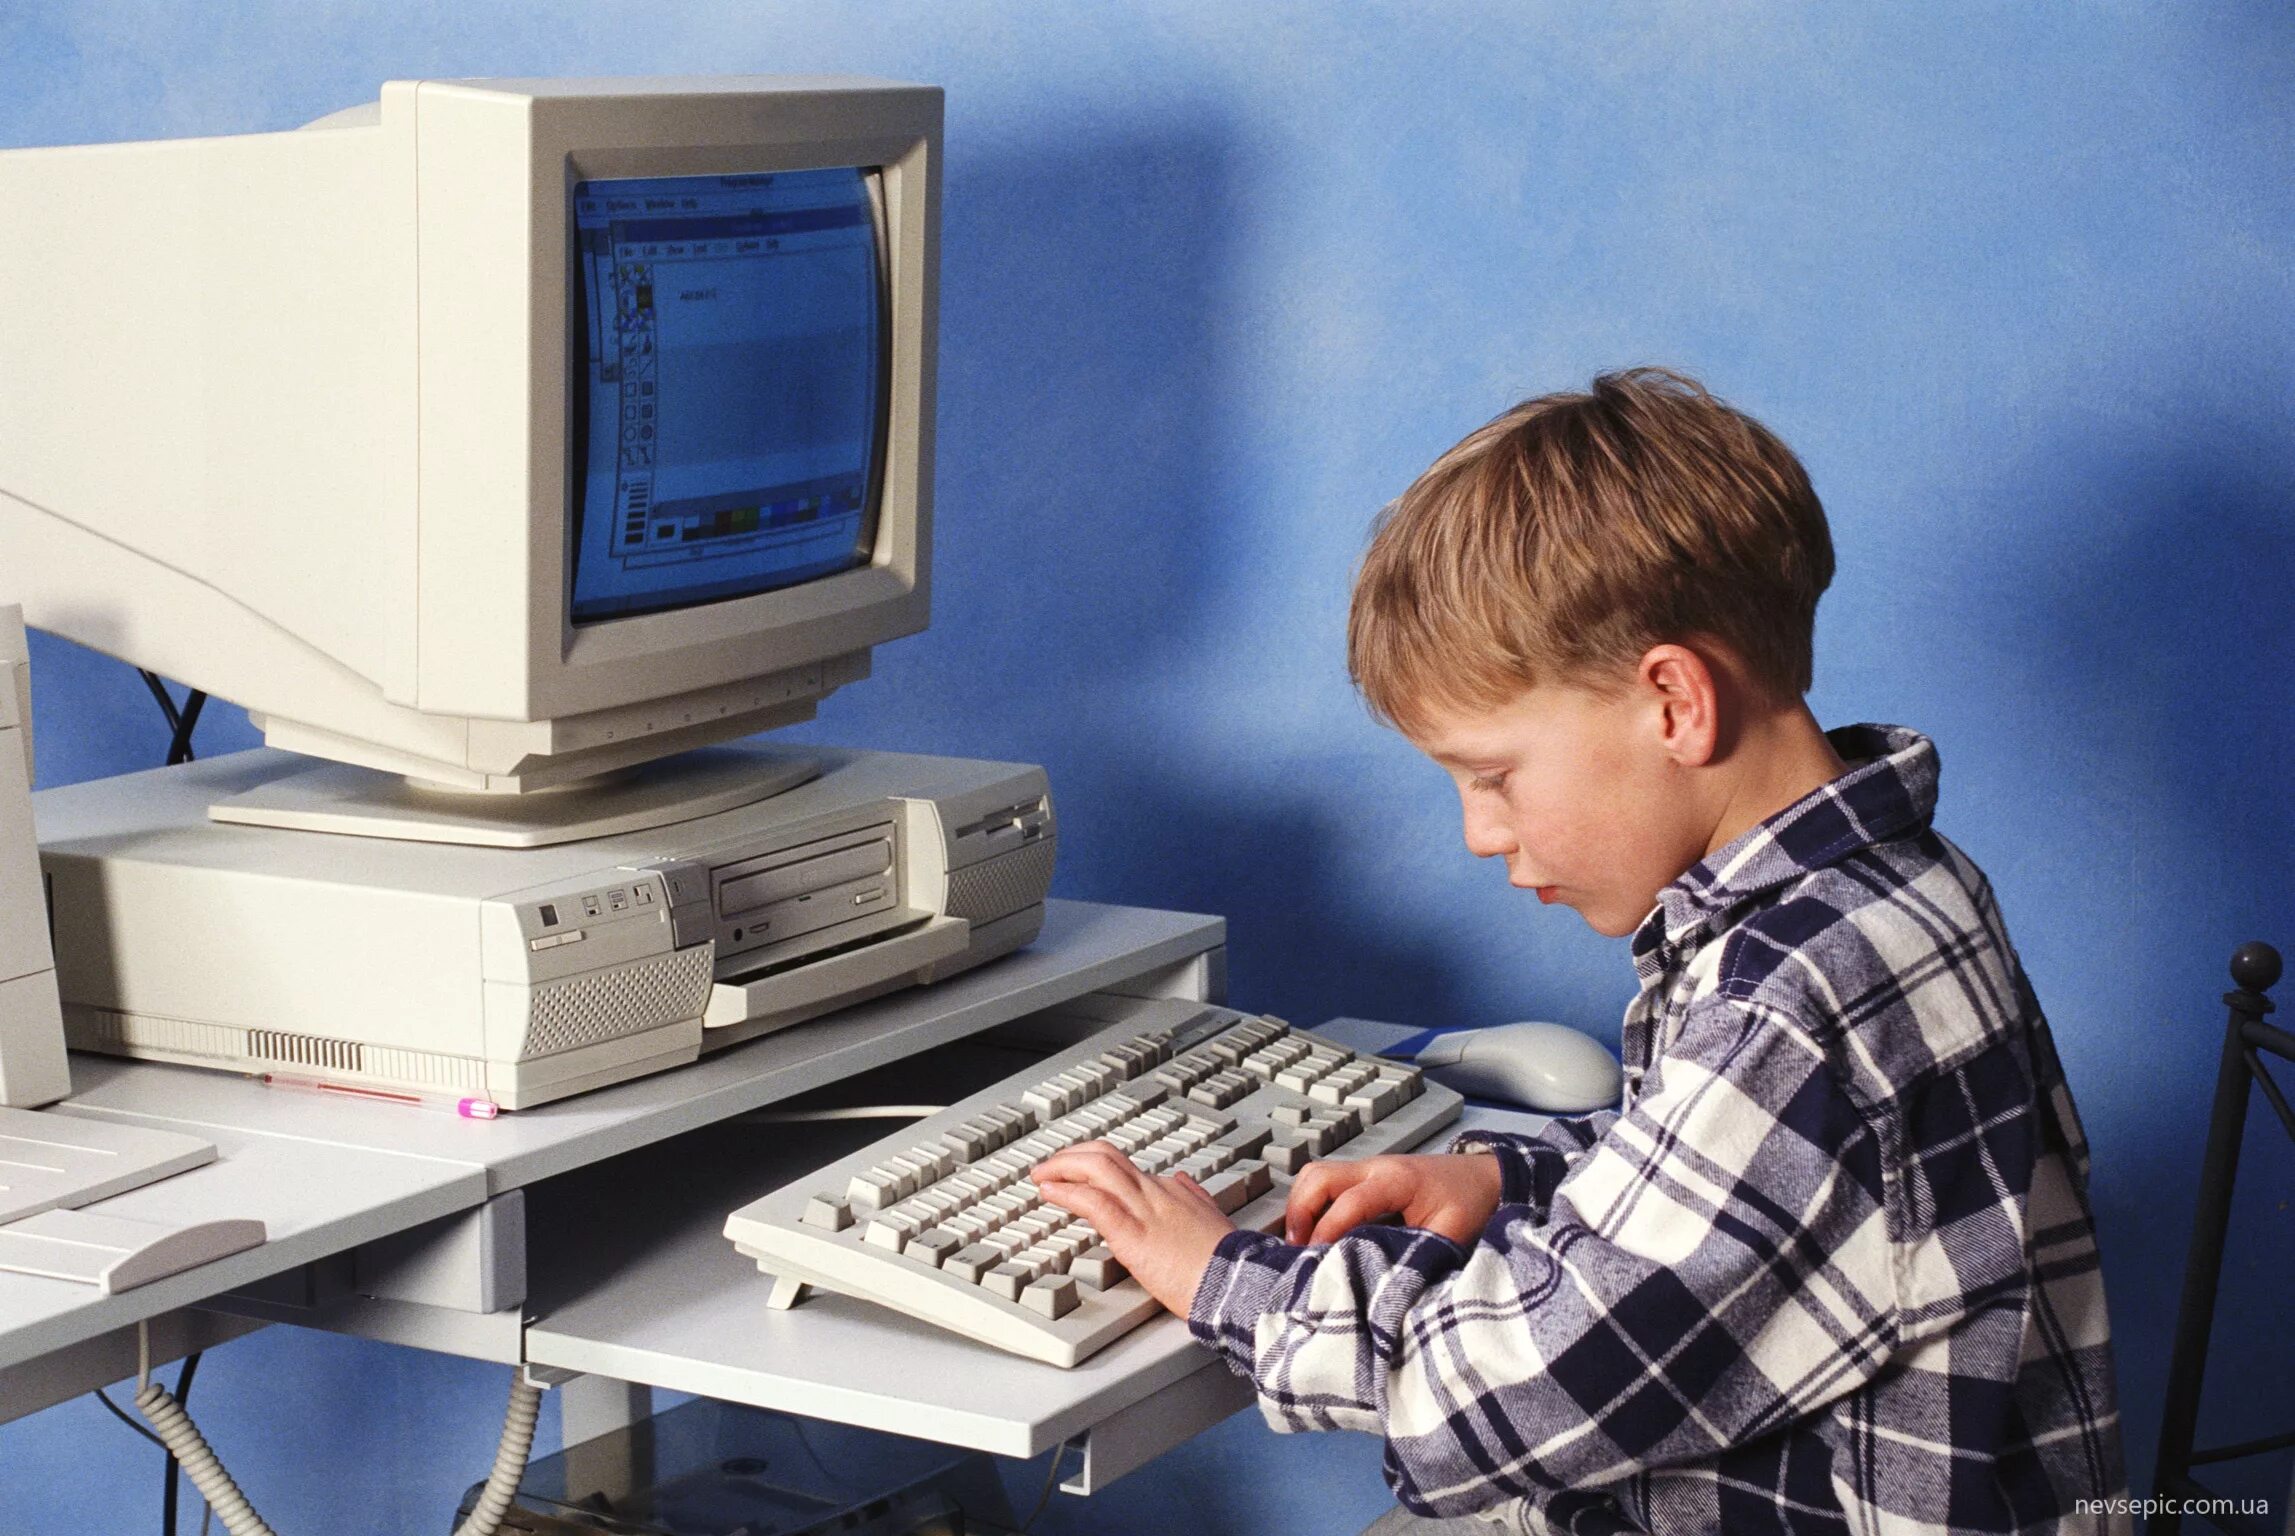 Ли компьютер. Старый комп и человек. Человек за старым компьютером. Компьютерный мальчик. Старый компьютер дети.